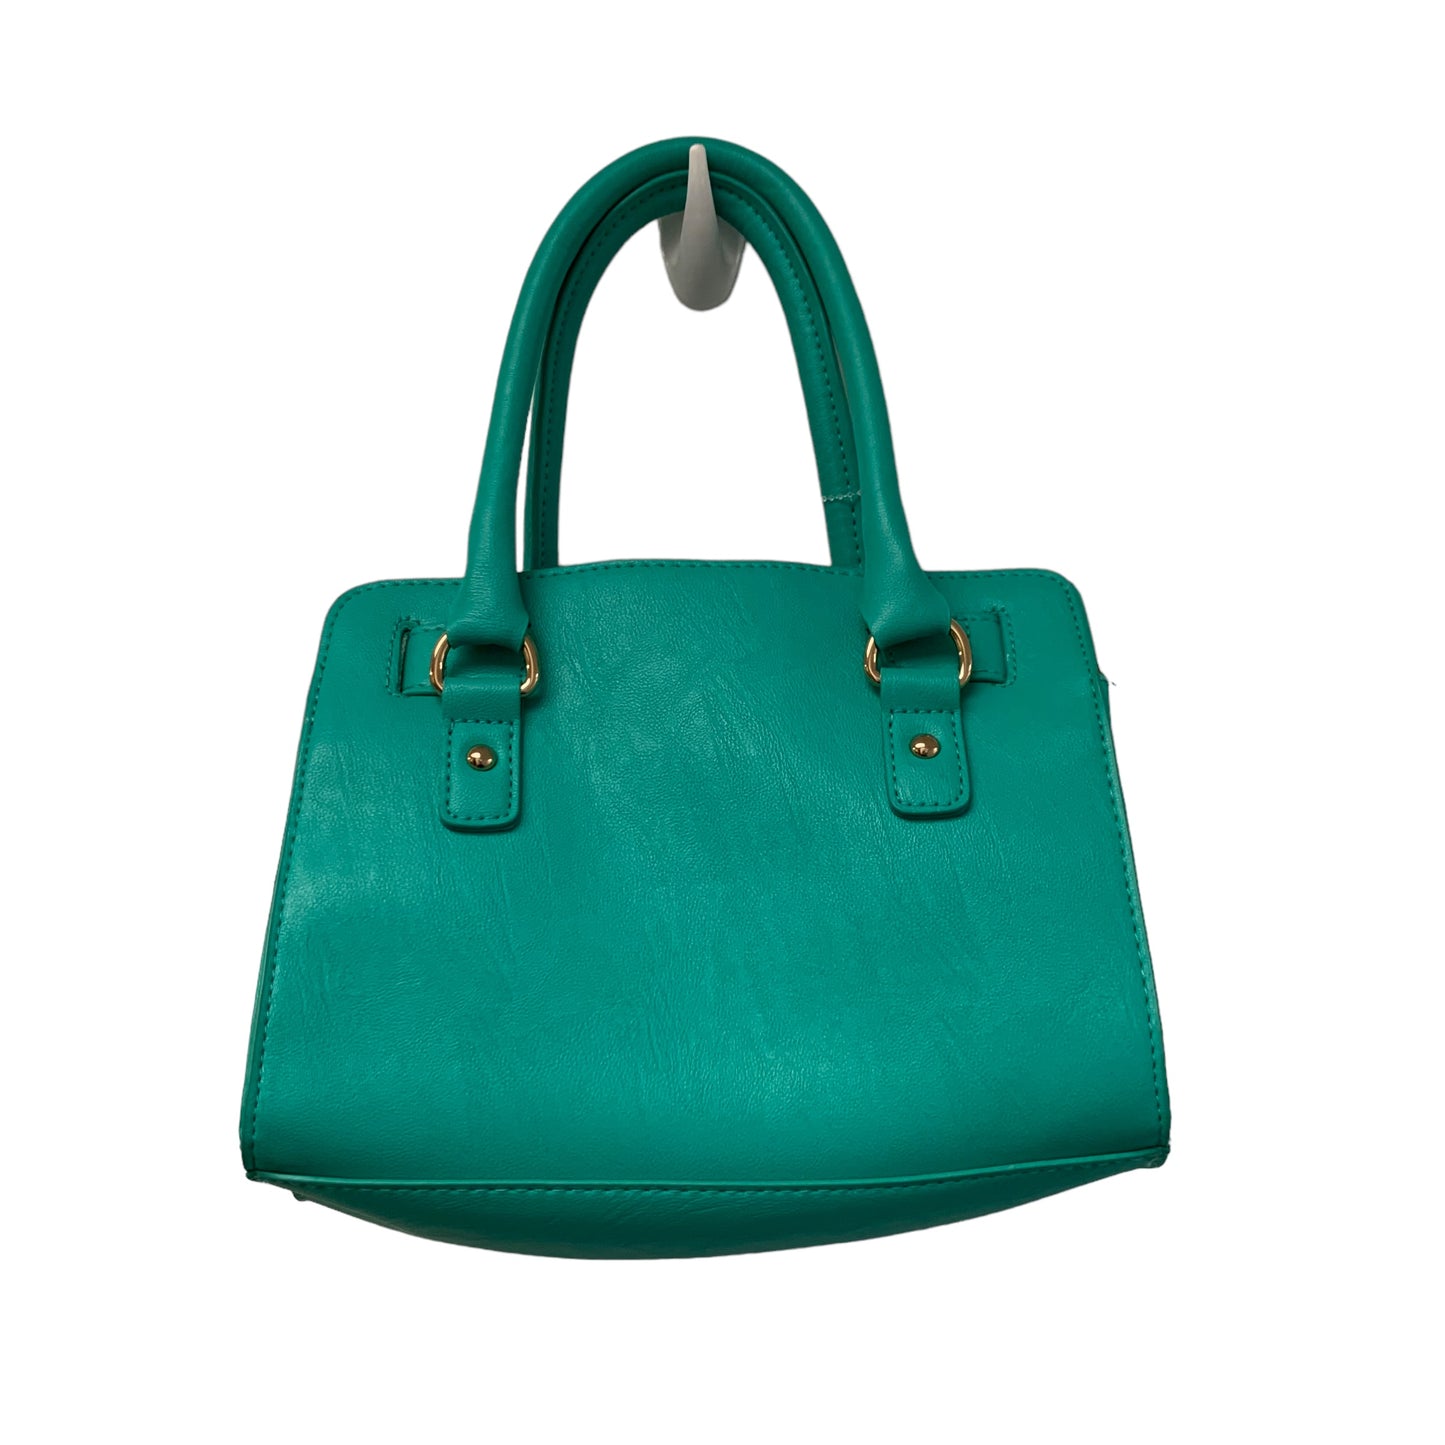 Handbag By Cato  Size: Small